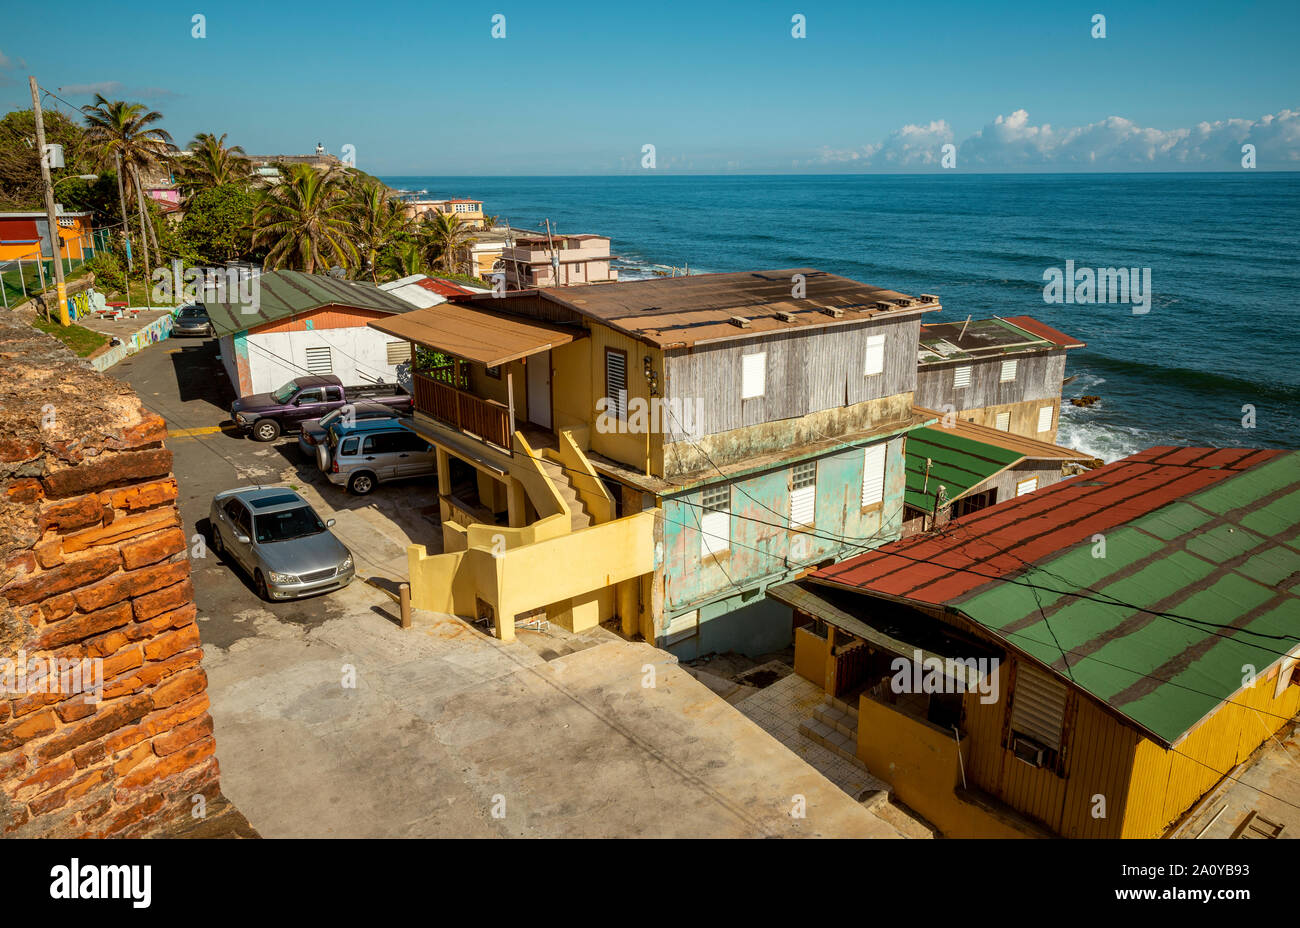 La Perla slum in old San Juan, Puerto Rico Stock Photo